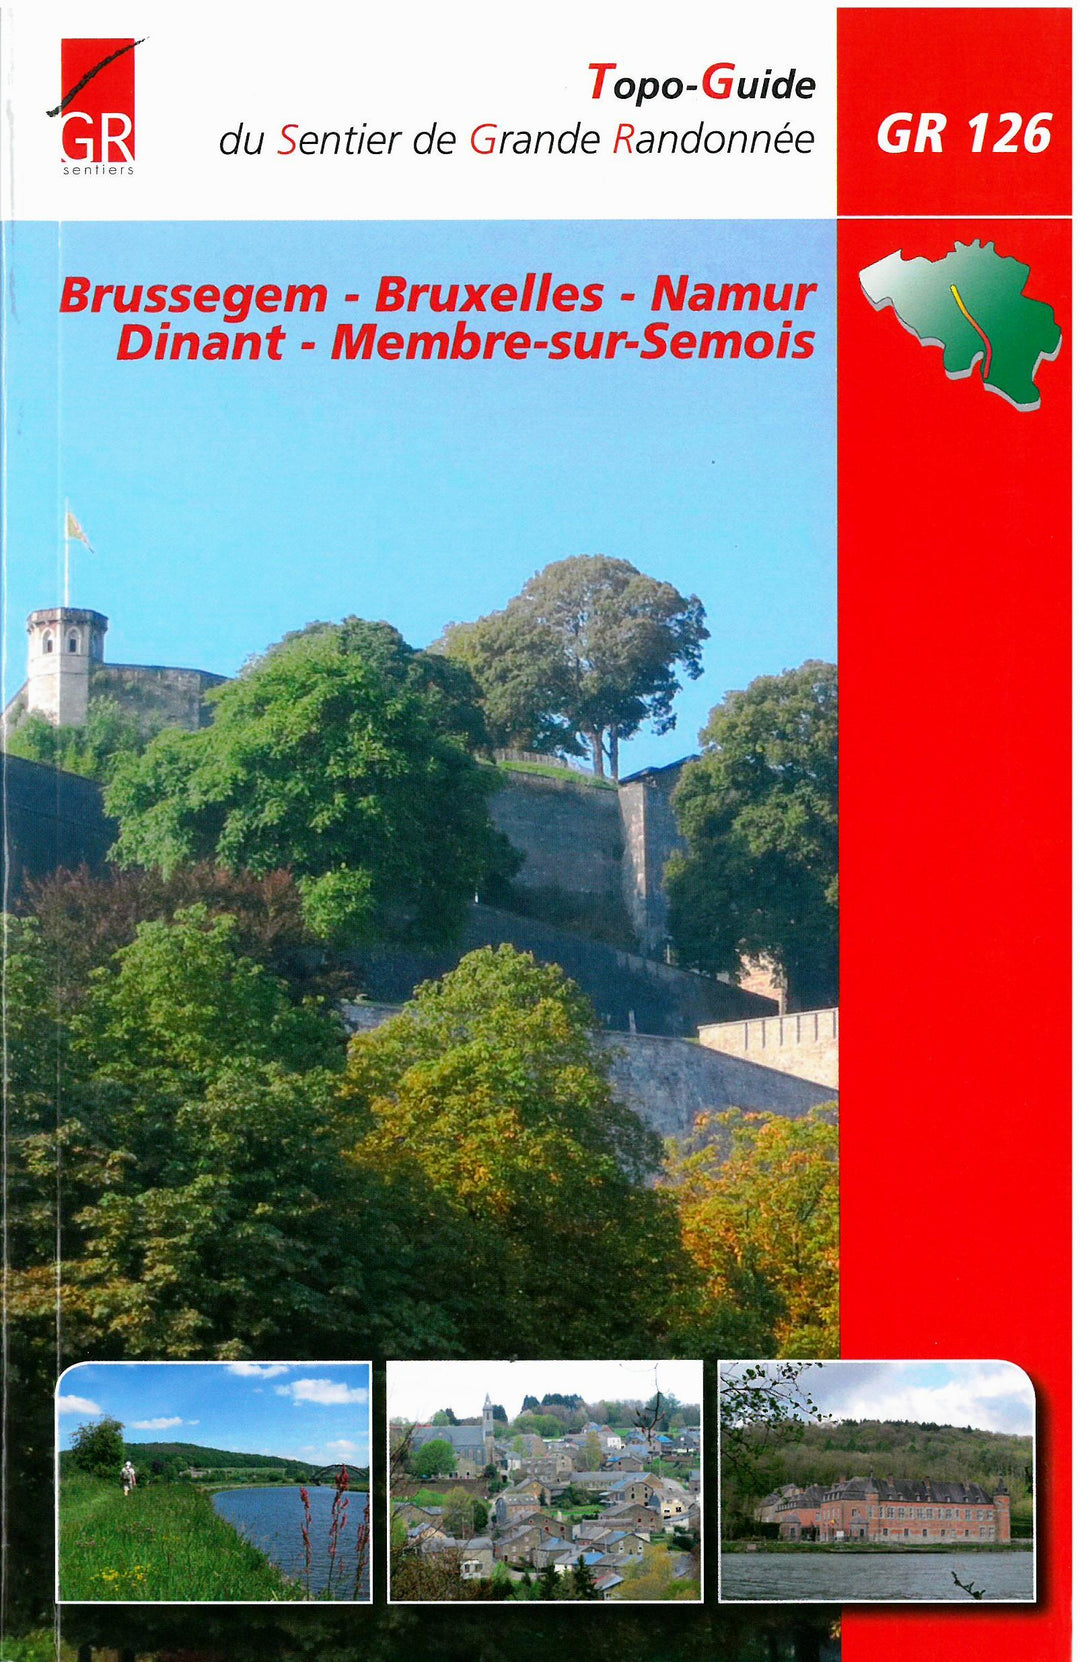 Topoguide de randonnée - Brussegem-Bruxelles-Namur-Dinant-Membre-sur-Semois - GR126 (Belgique) | Les Sentiers de Grande Randonnée guide de randonnée Les Sentier de Grande Randonnée 